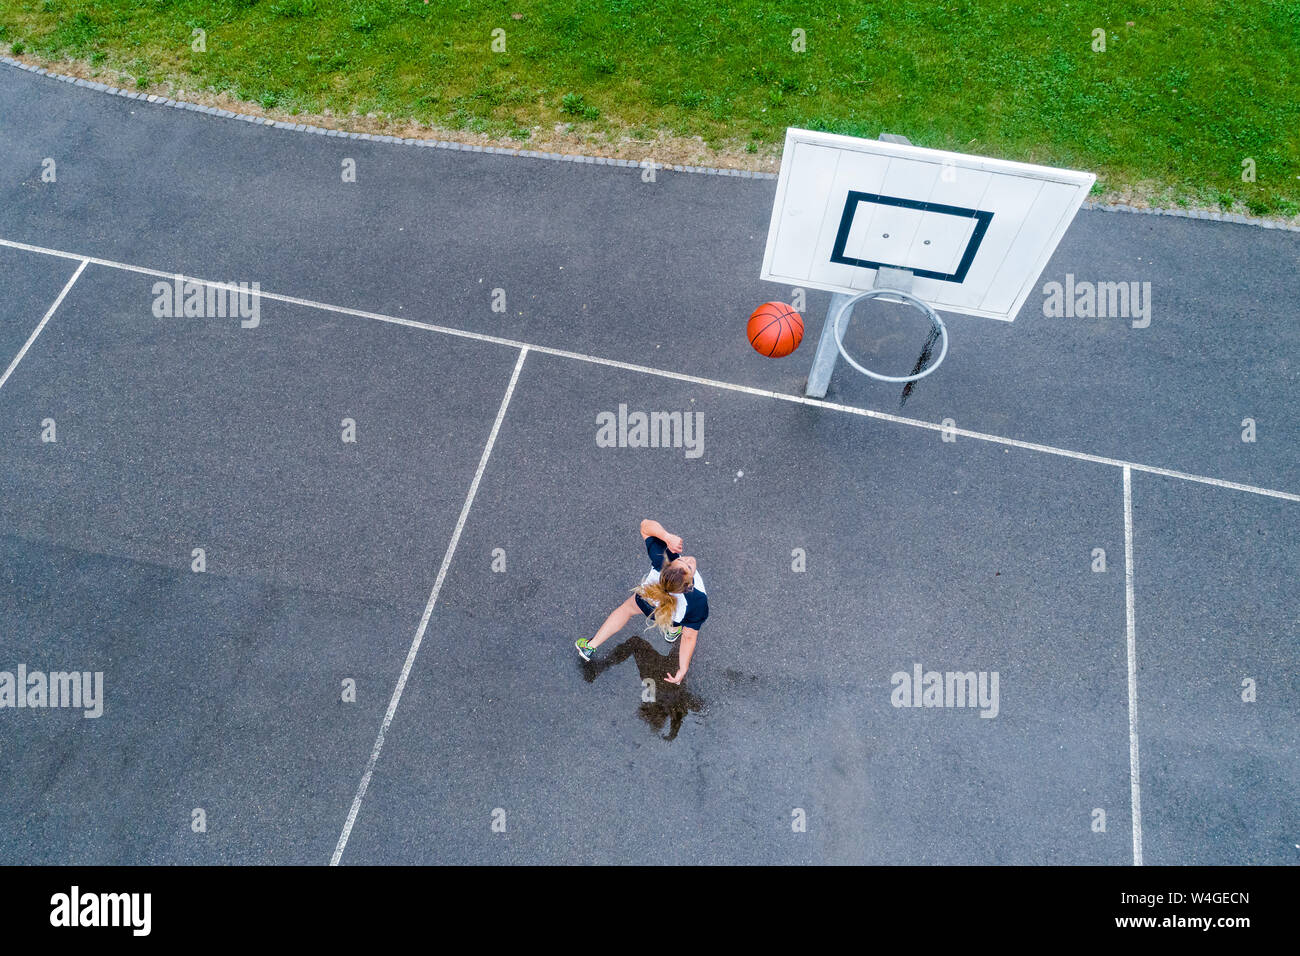 Jeune femme jouant au basket-ball, vu de dessus Banque D'Images